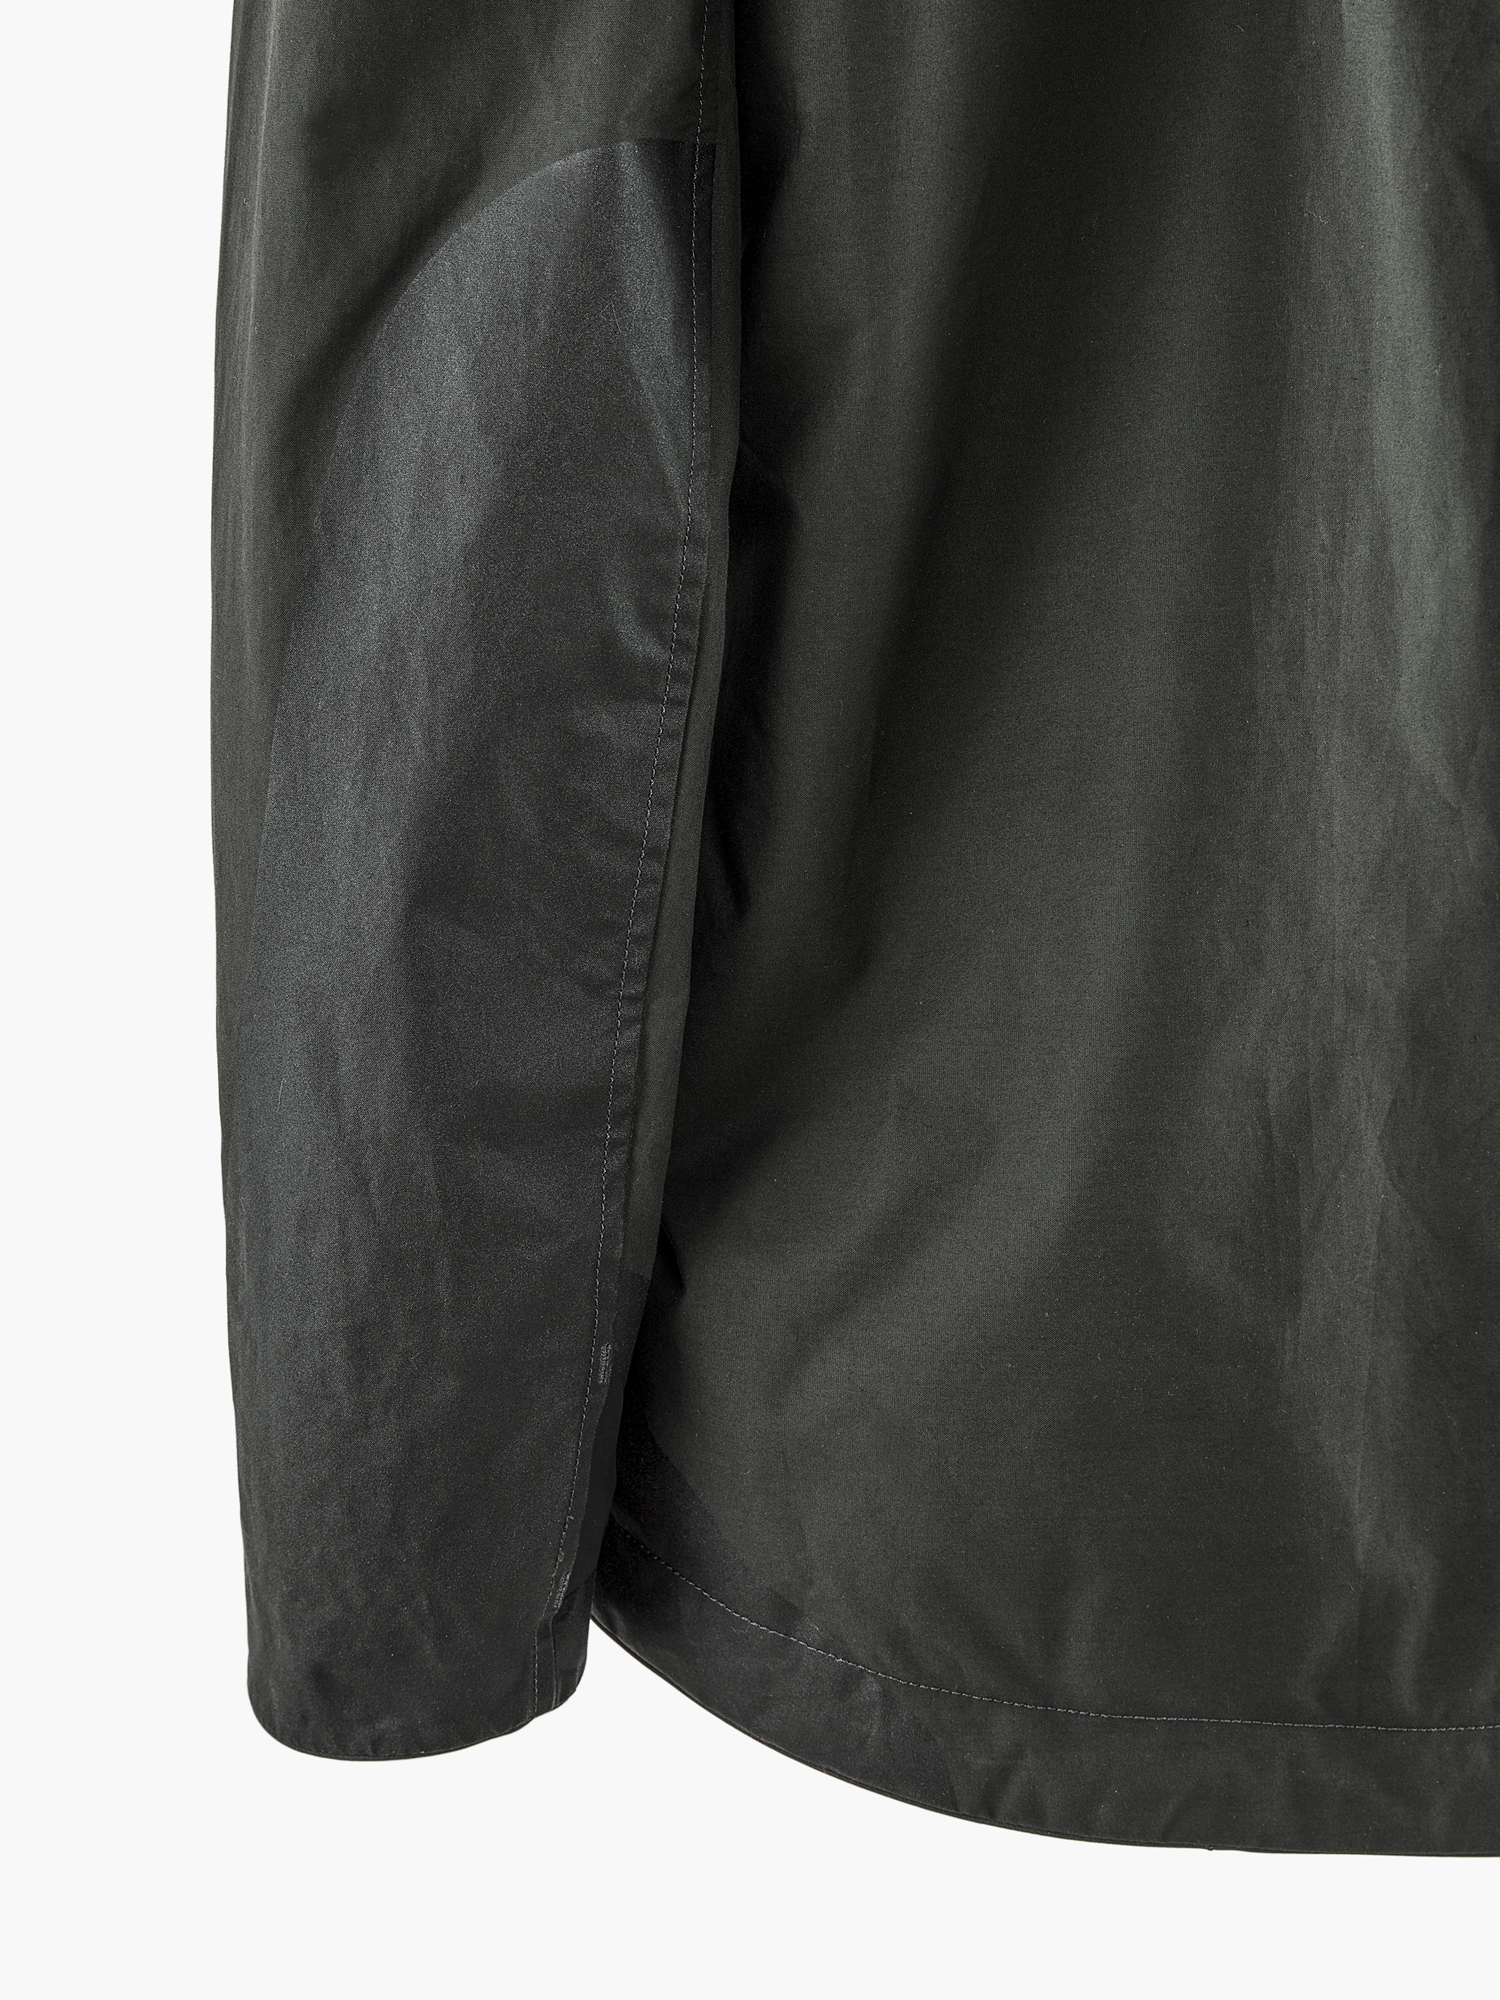 10607W91 - Einride Jacket W's - Charcoal